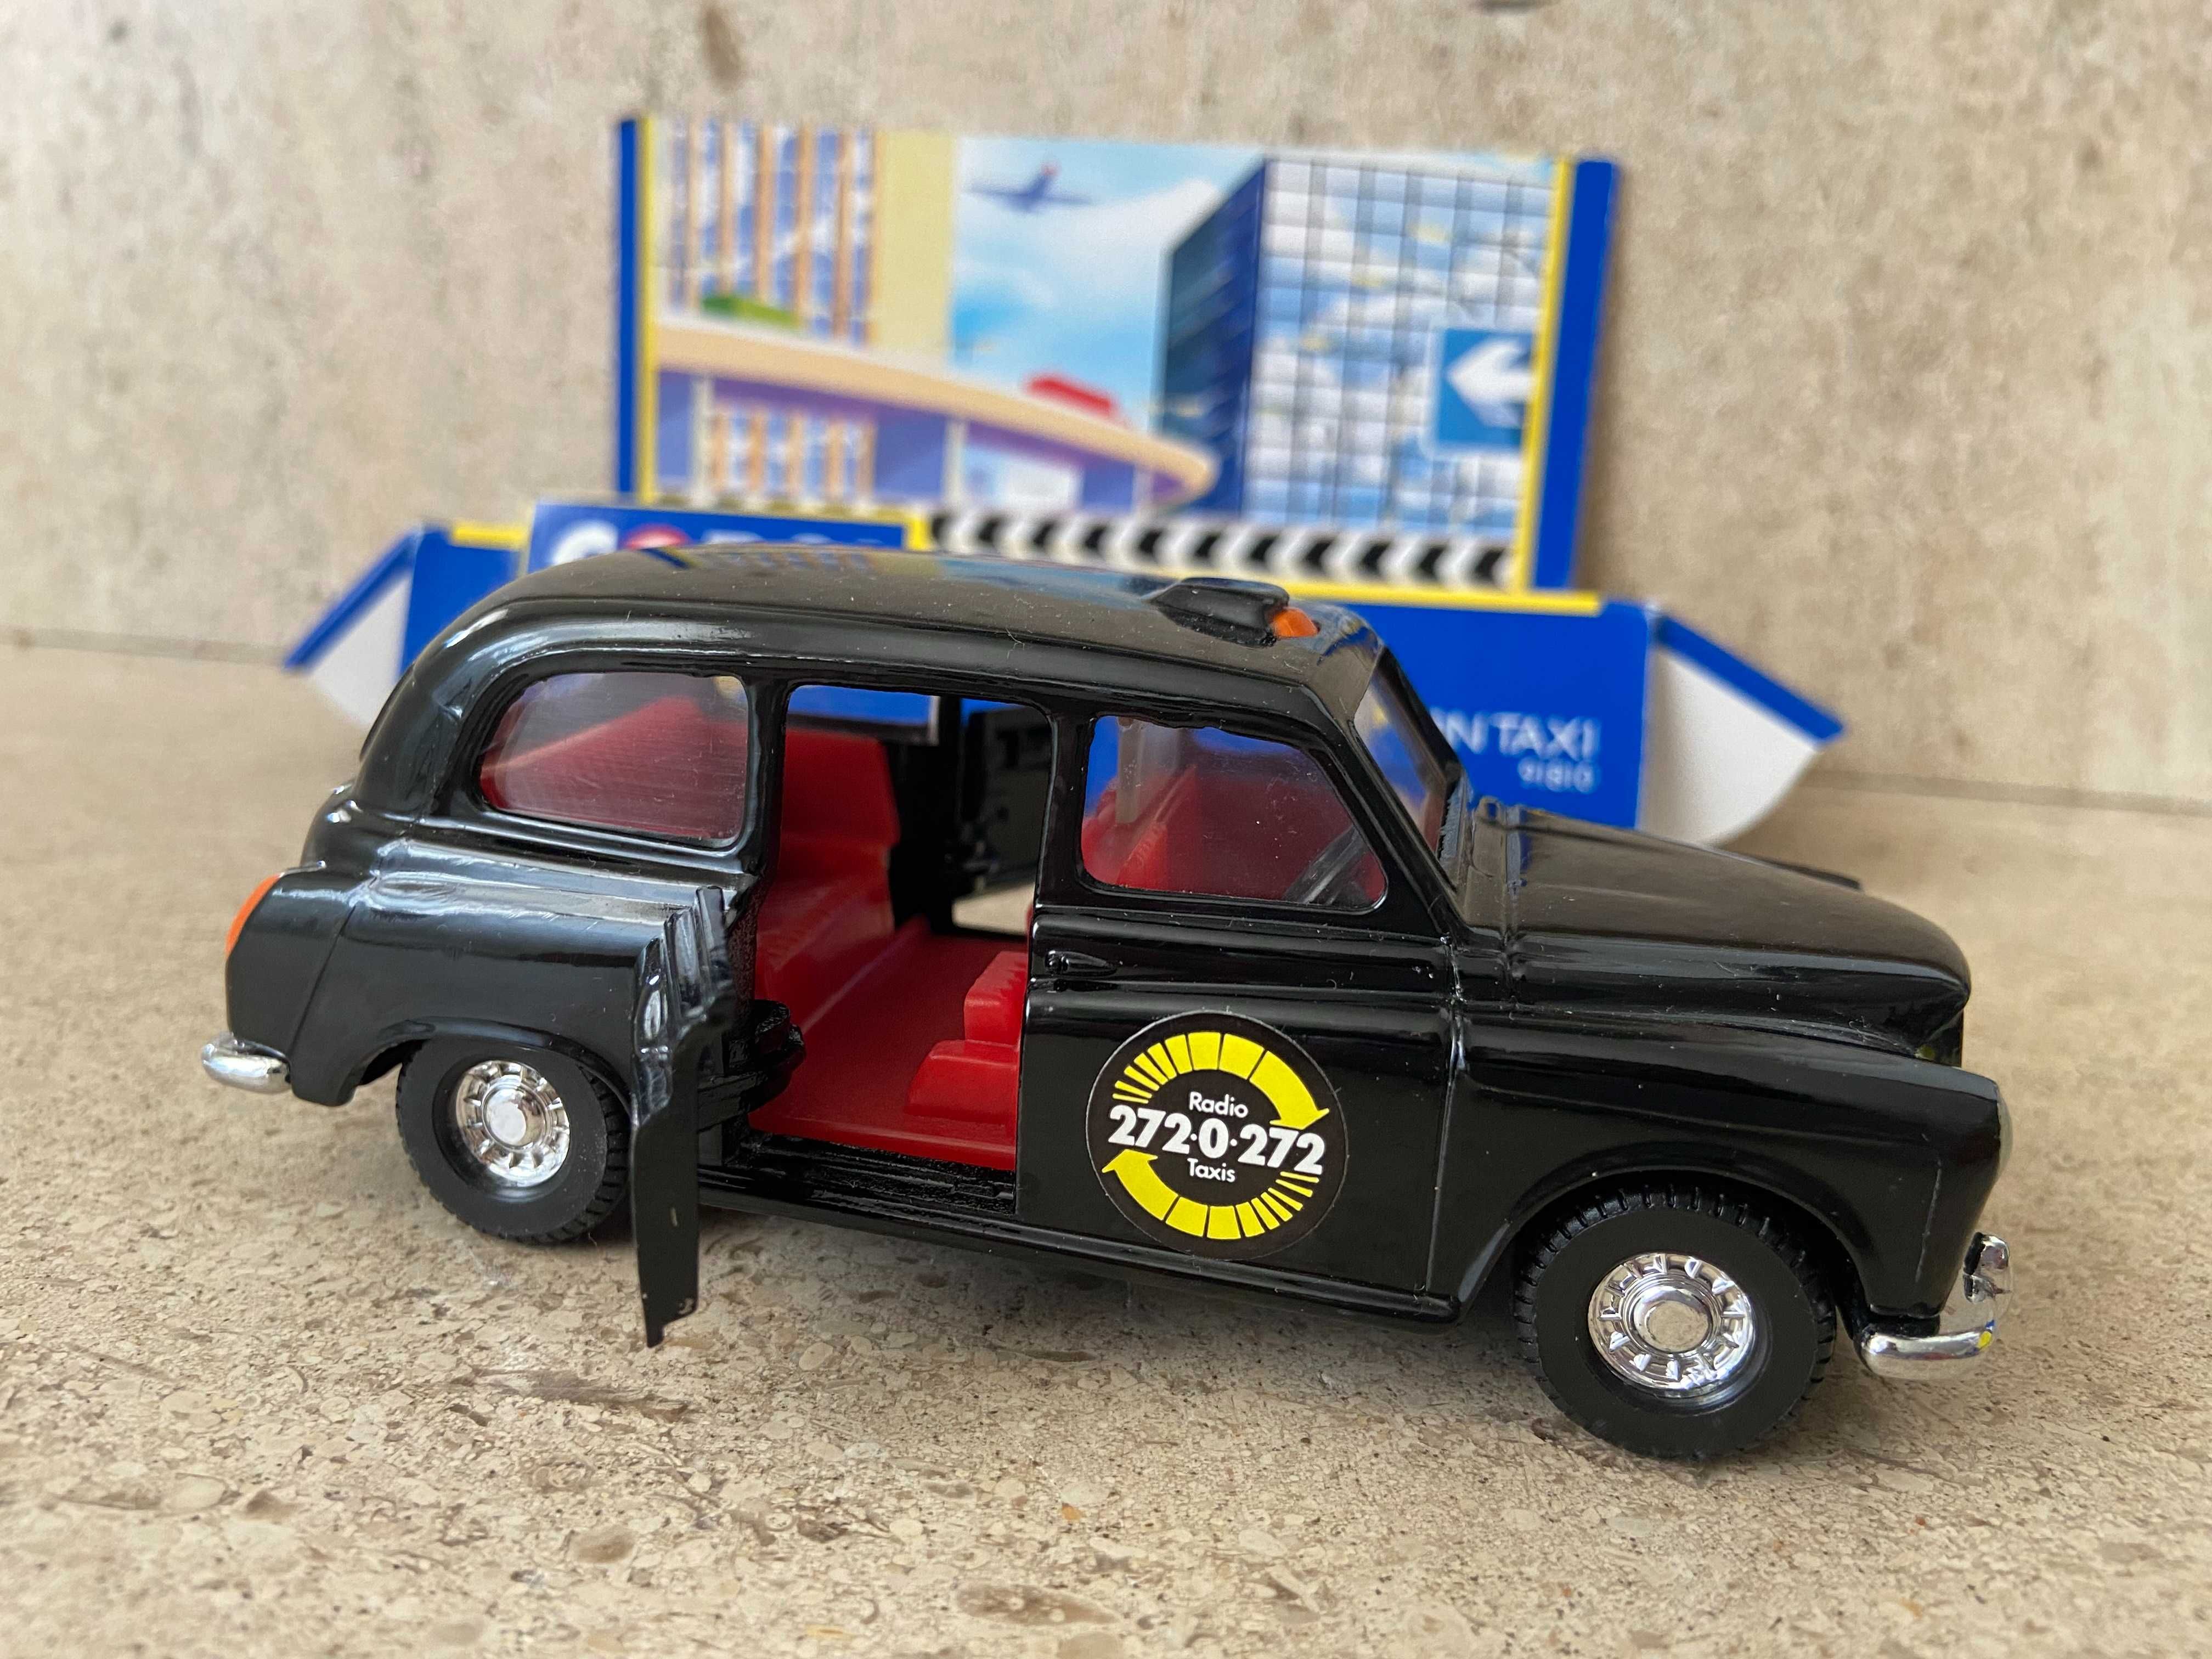 Corgi Taxi Londrino (Novo c/ box original) - 1993